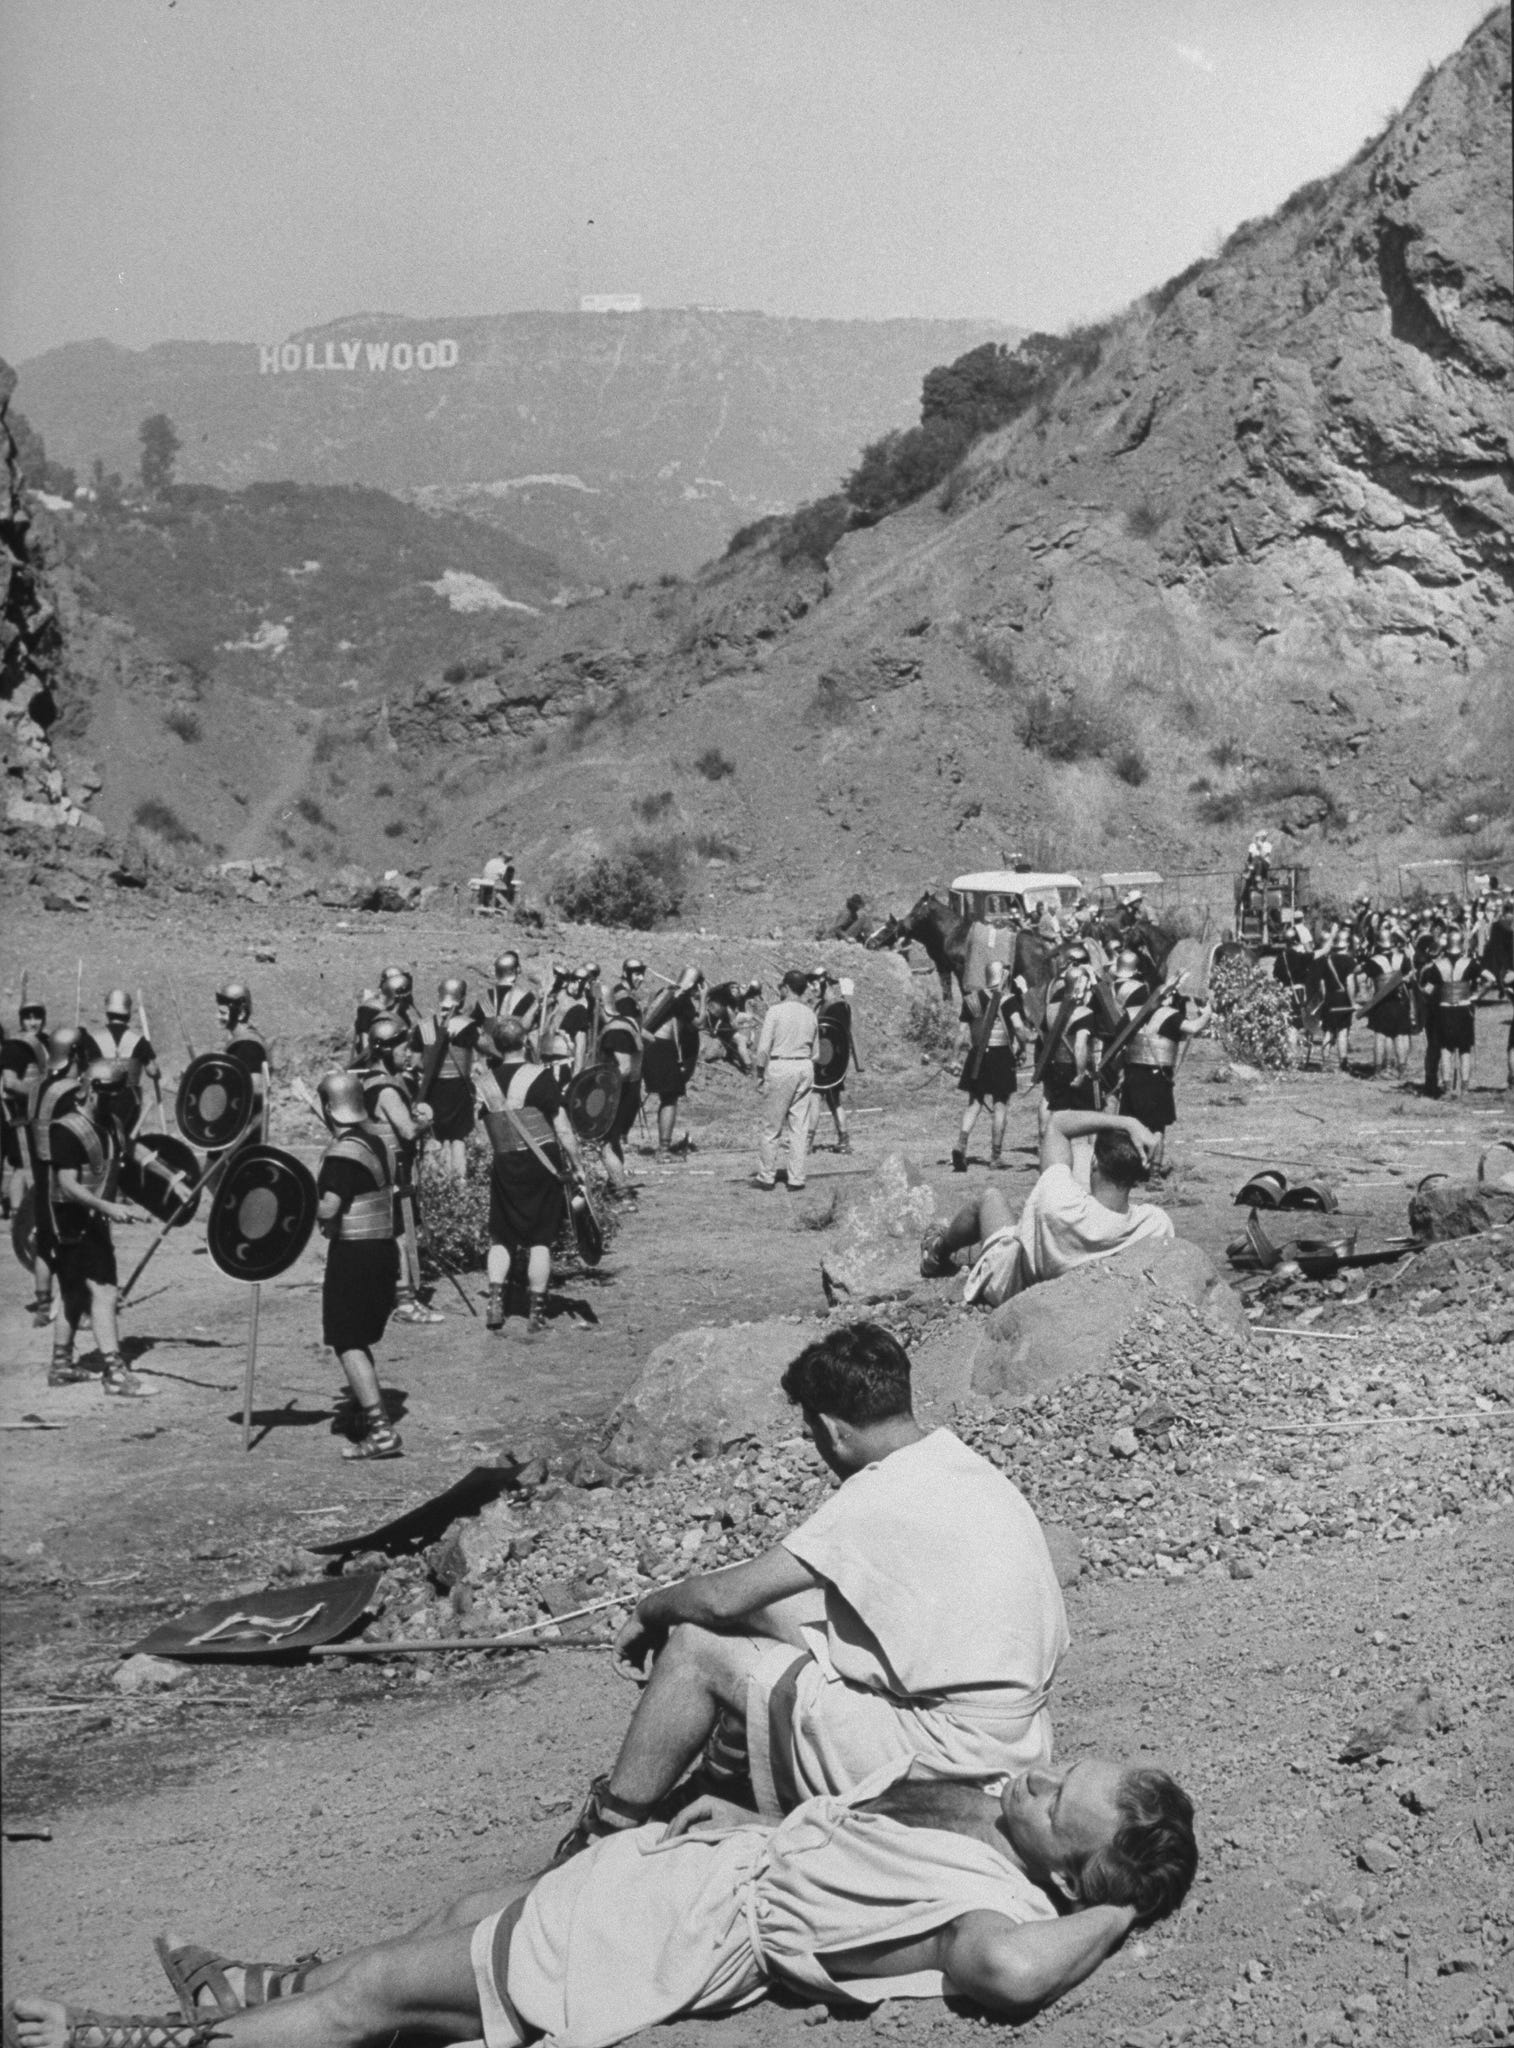 Extras zeigen römische Soldaten, die in einem baumlosen Tal ruhen, mit dem Hollywood-Schild auf einem Hügel im Hintergrund während der Dreharbeiten zu Julius Cäsar.